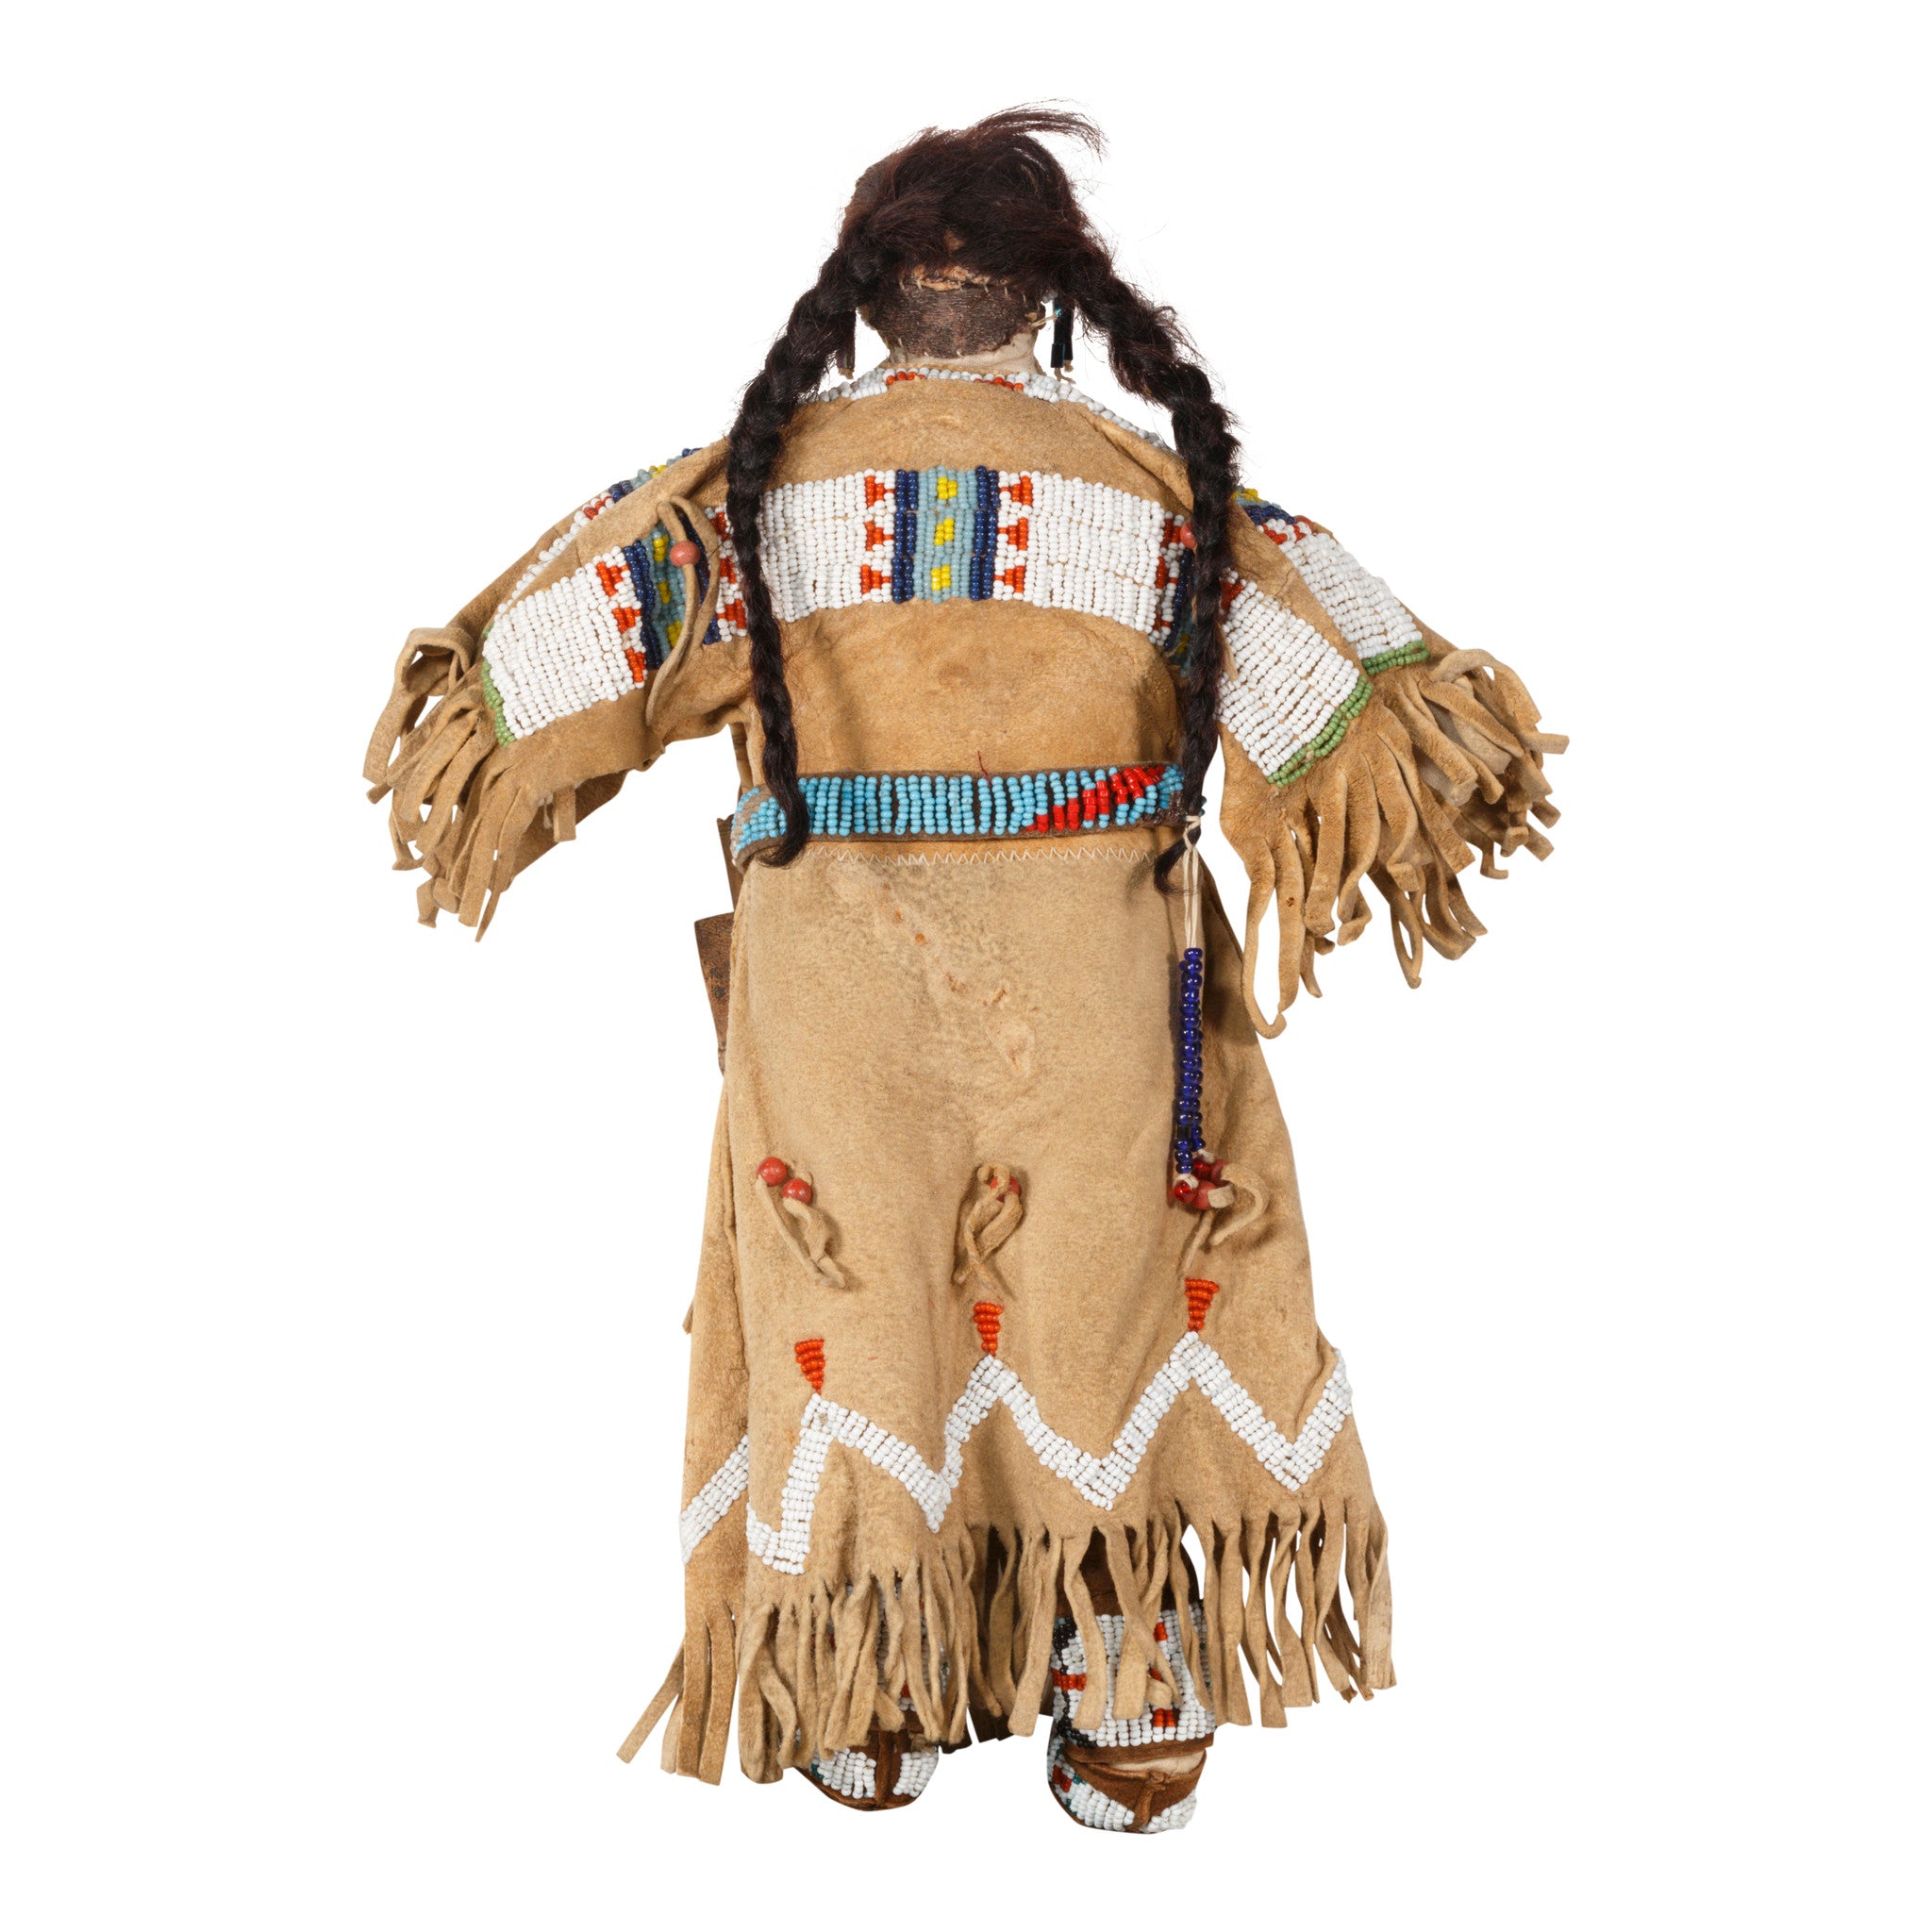 Cheyenne Female Warrior Doll